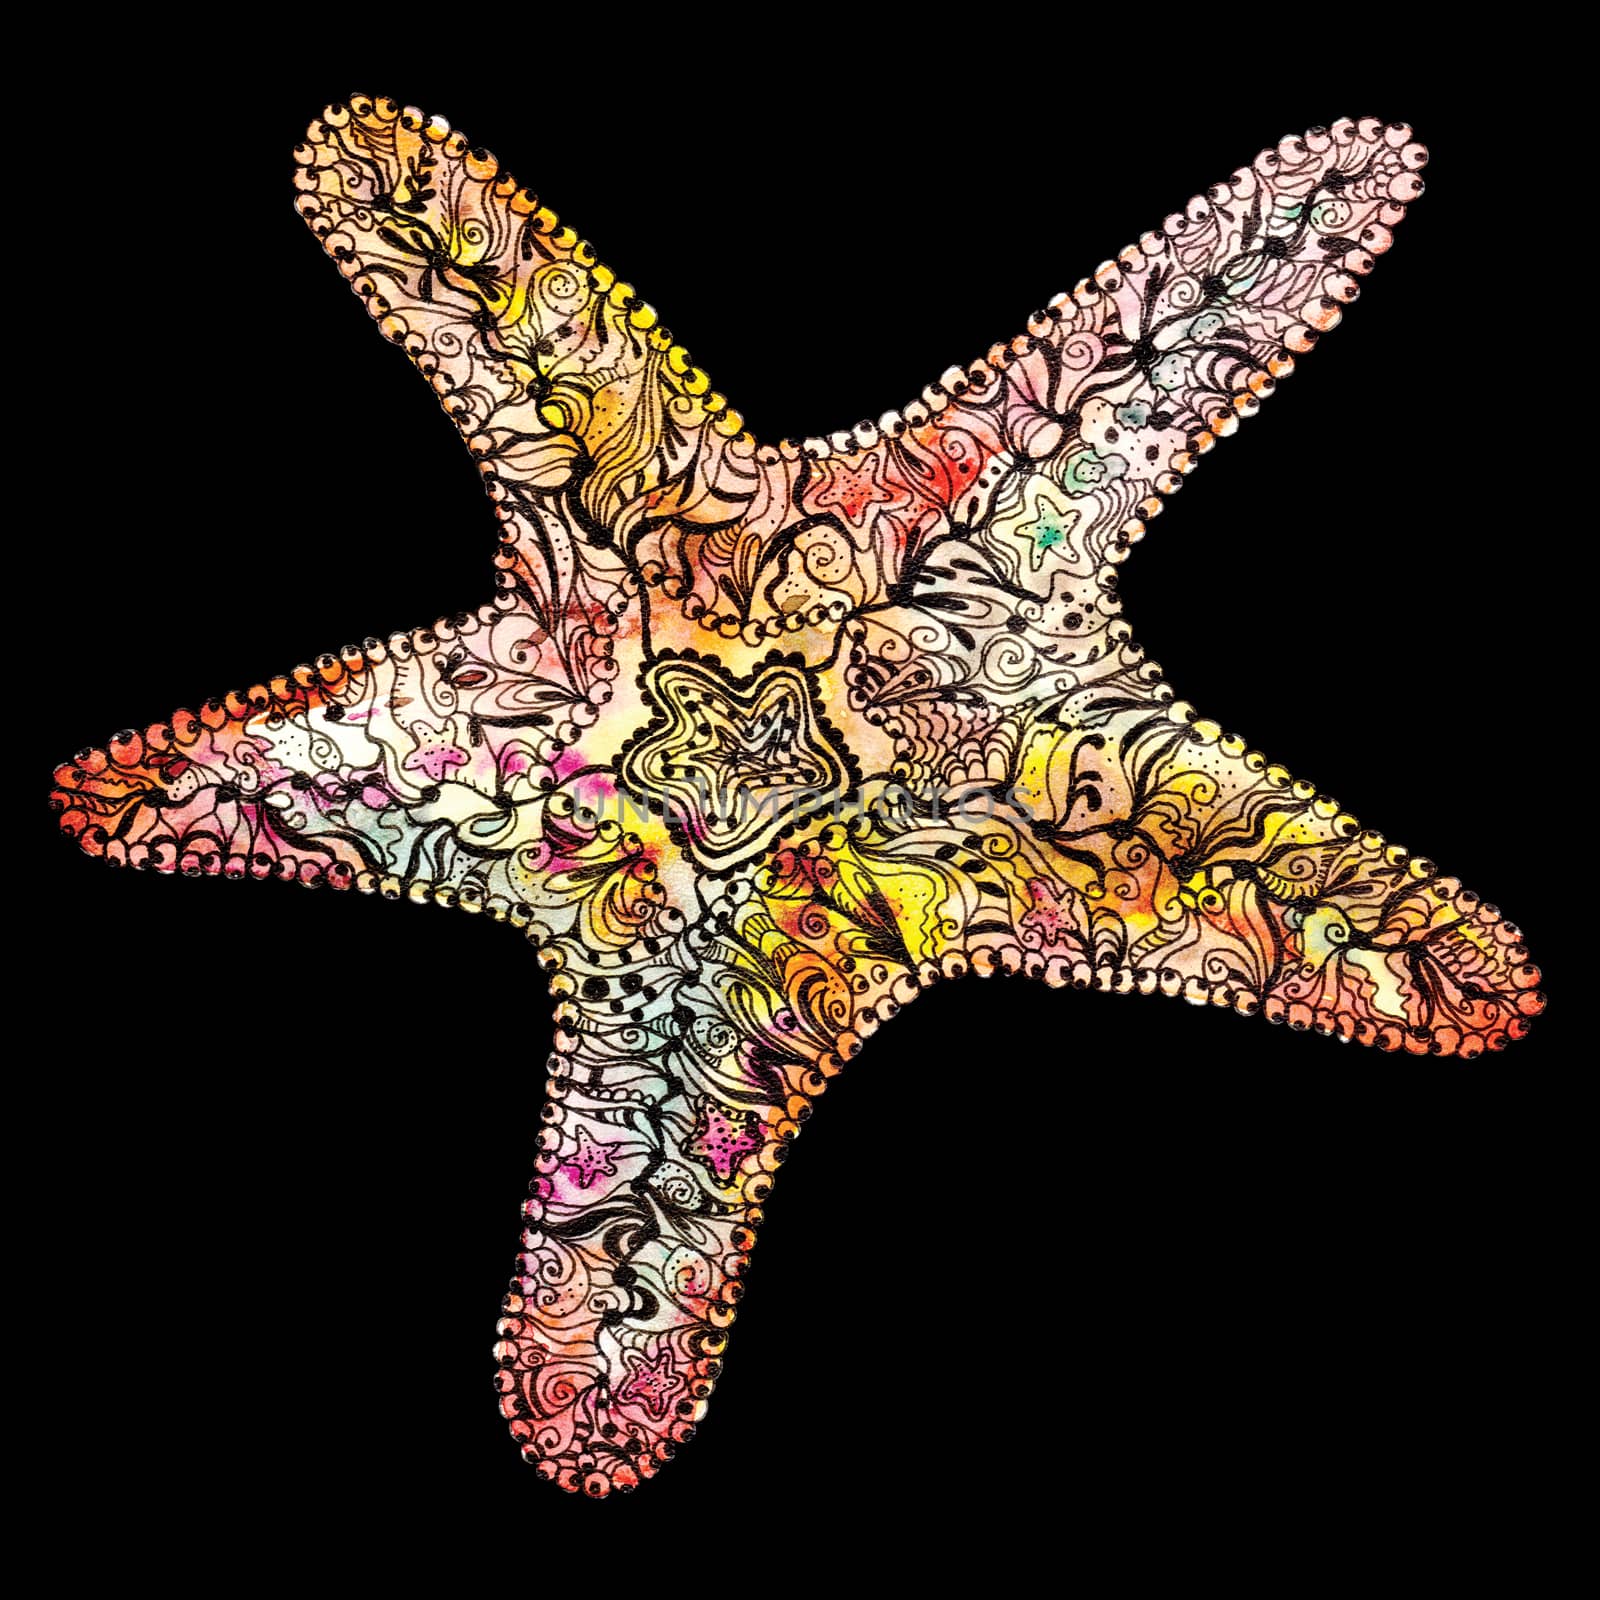 Creative Watercolor Starfish by kisika